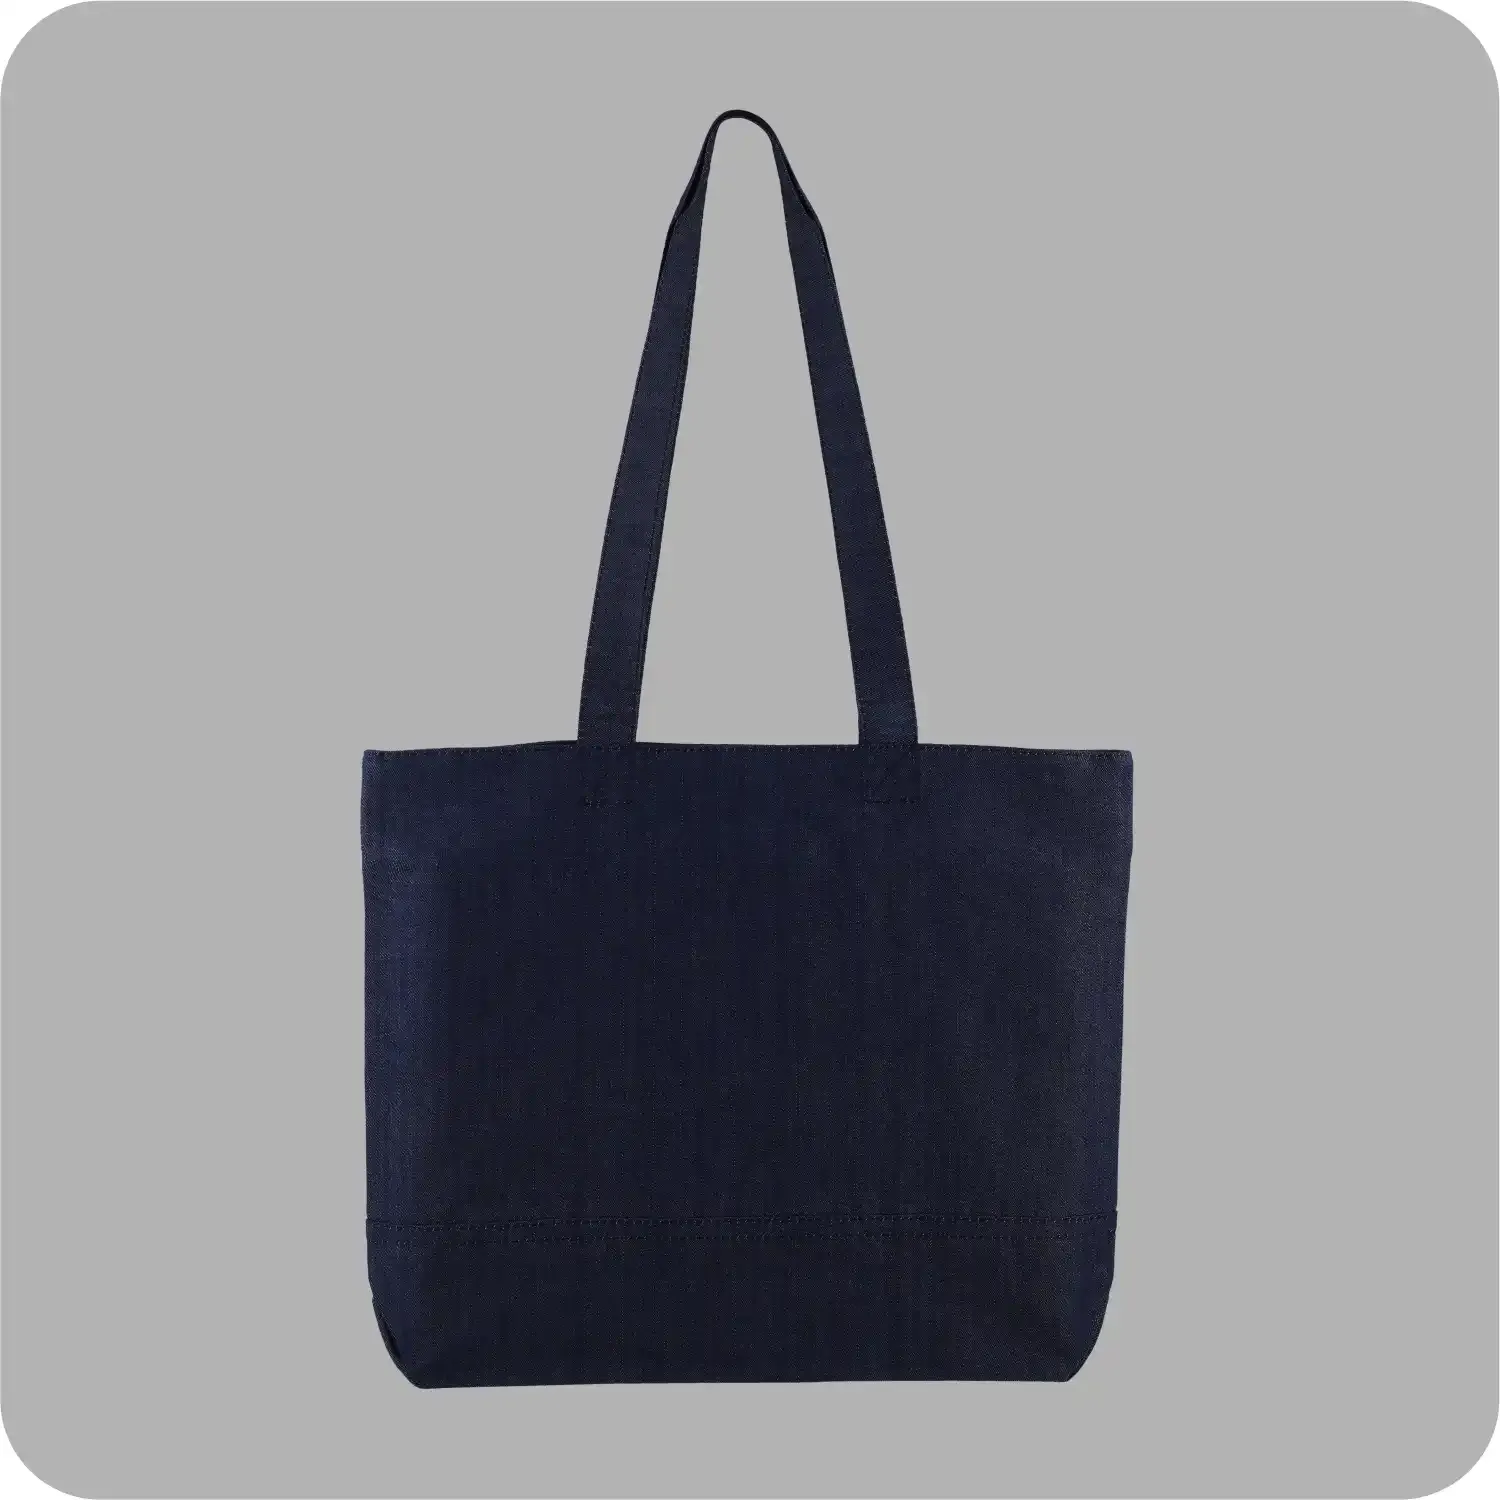 Denim Tote Bag Shopping Bag Promotional Bag Conference Bag Institutional bag-03